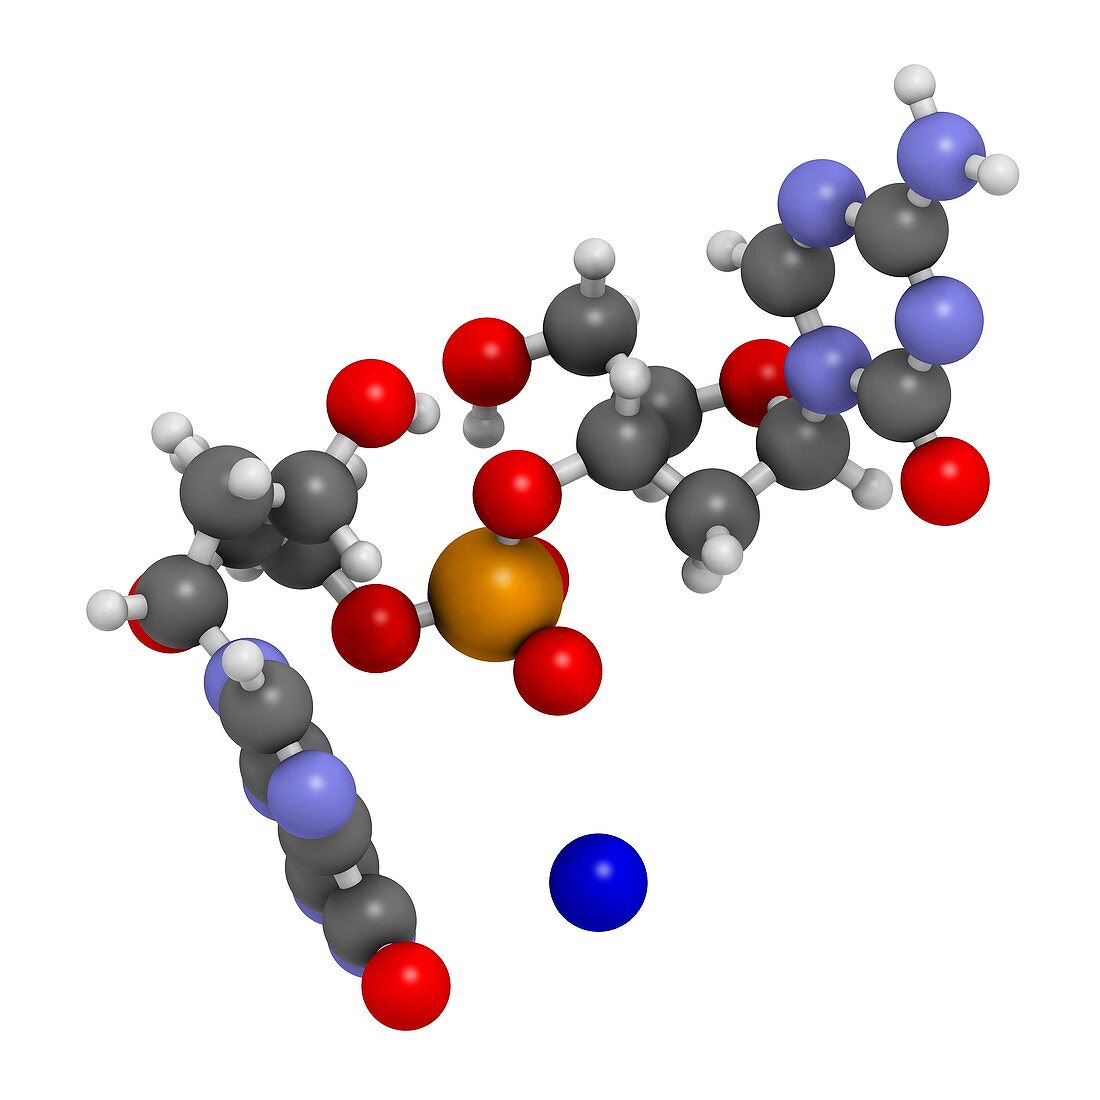 Guadecitabine cancer drug molecule